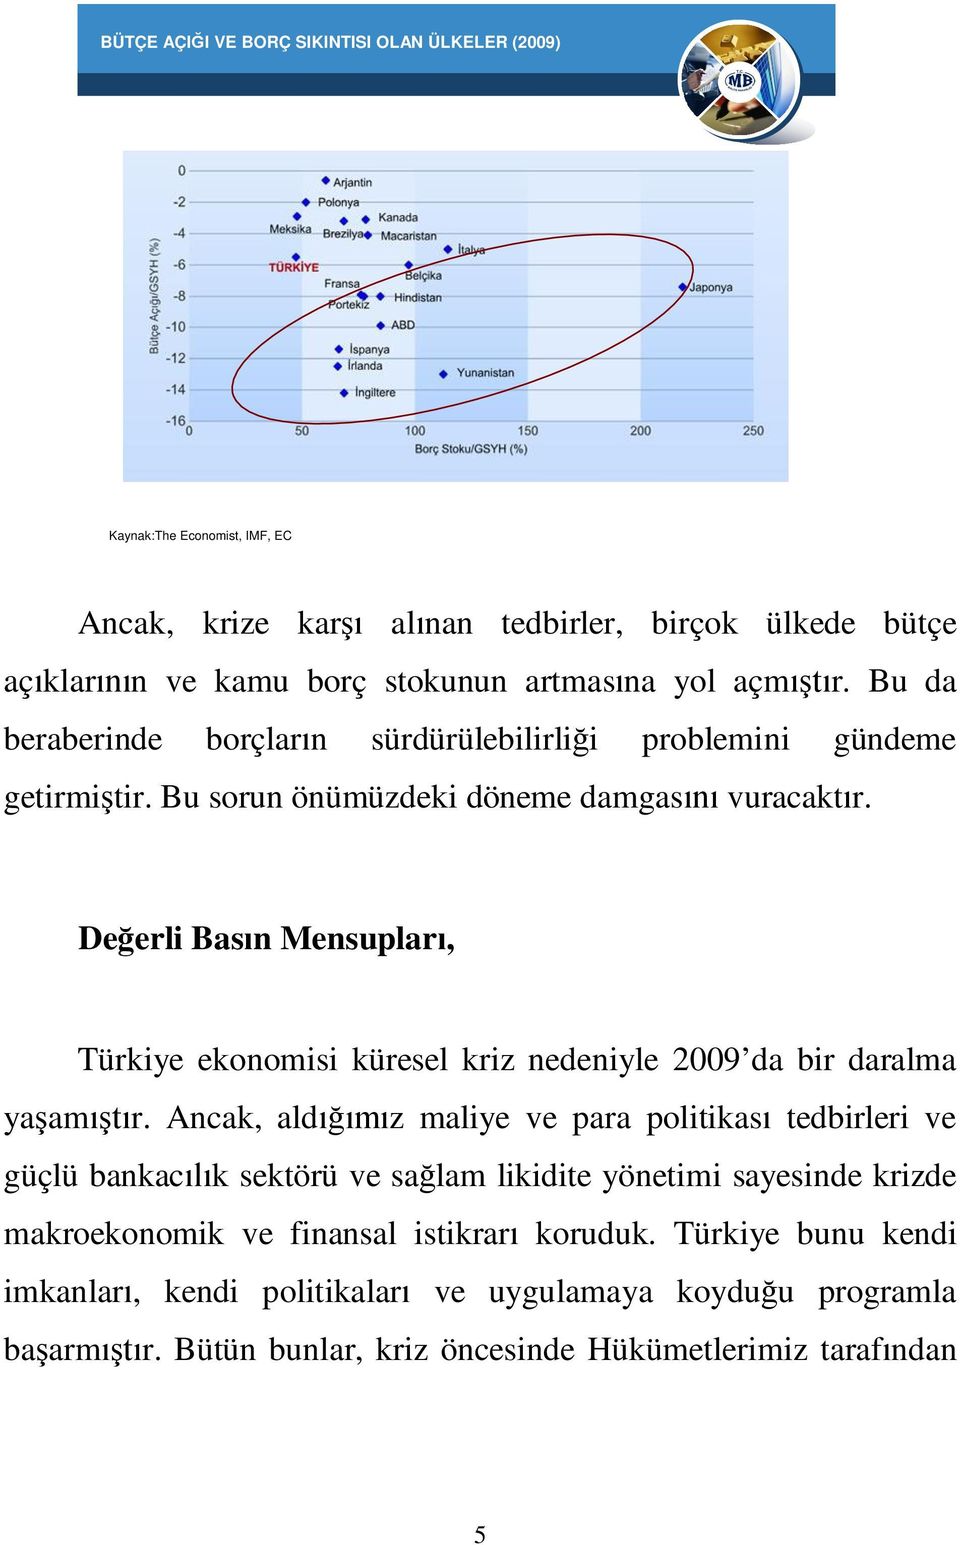 De erli Bas n Mensuplar, Türkiye ekonomisi küresel kriz nedeniyle 2009 da bir daralma ya am r.